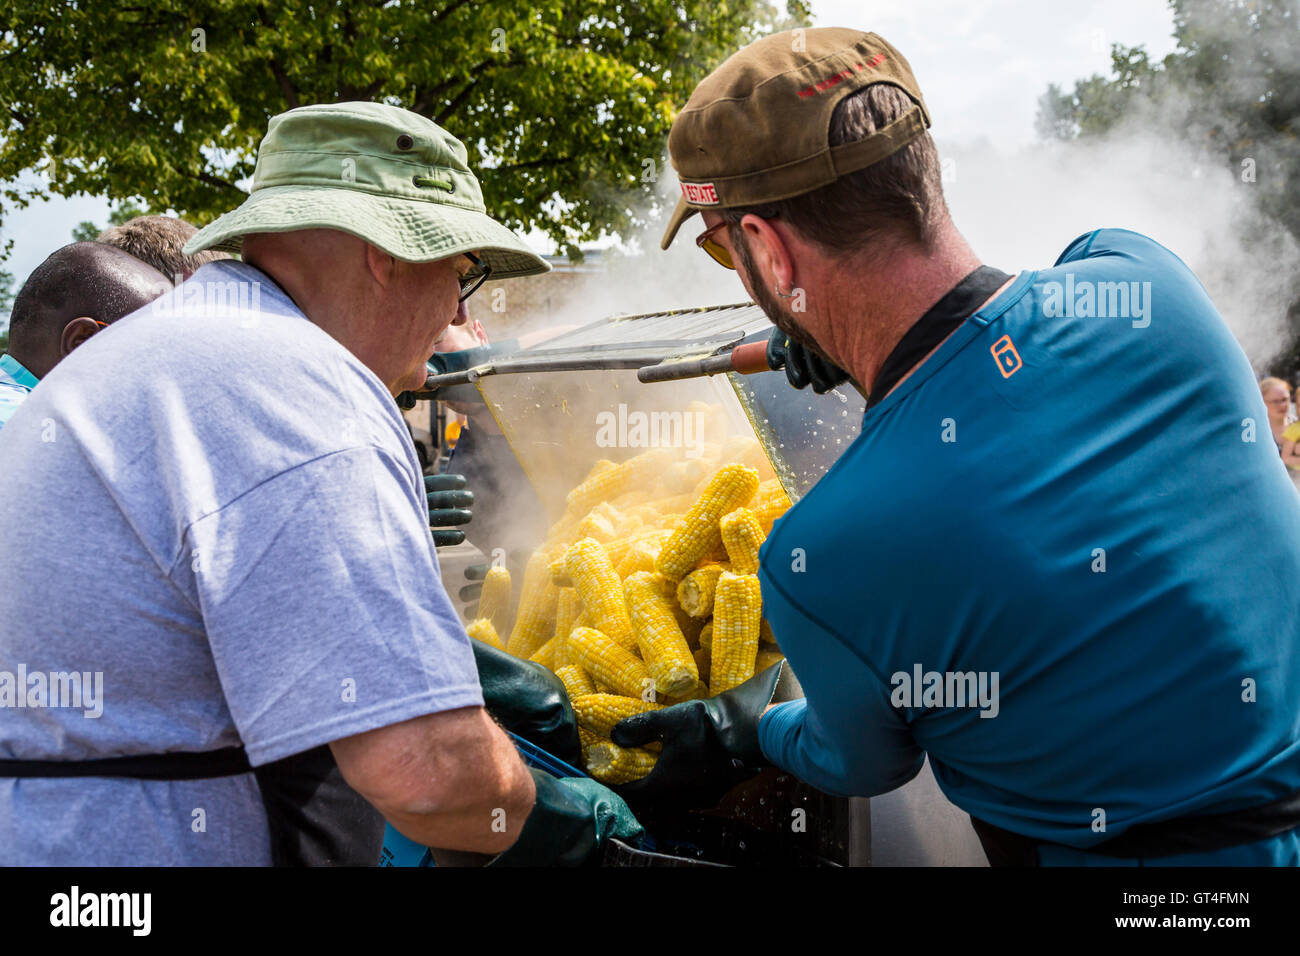 Preparing free corn at the Corn and Apple Festival 2016 in Morden, Manitoba, Canada. Stock Photo